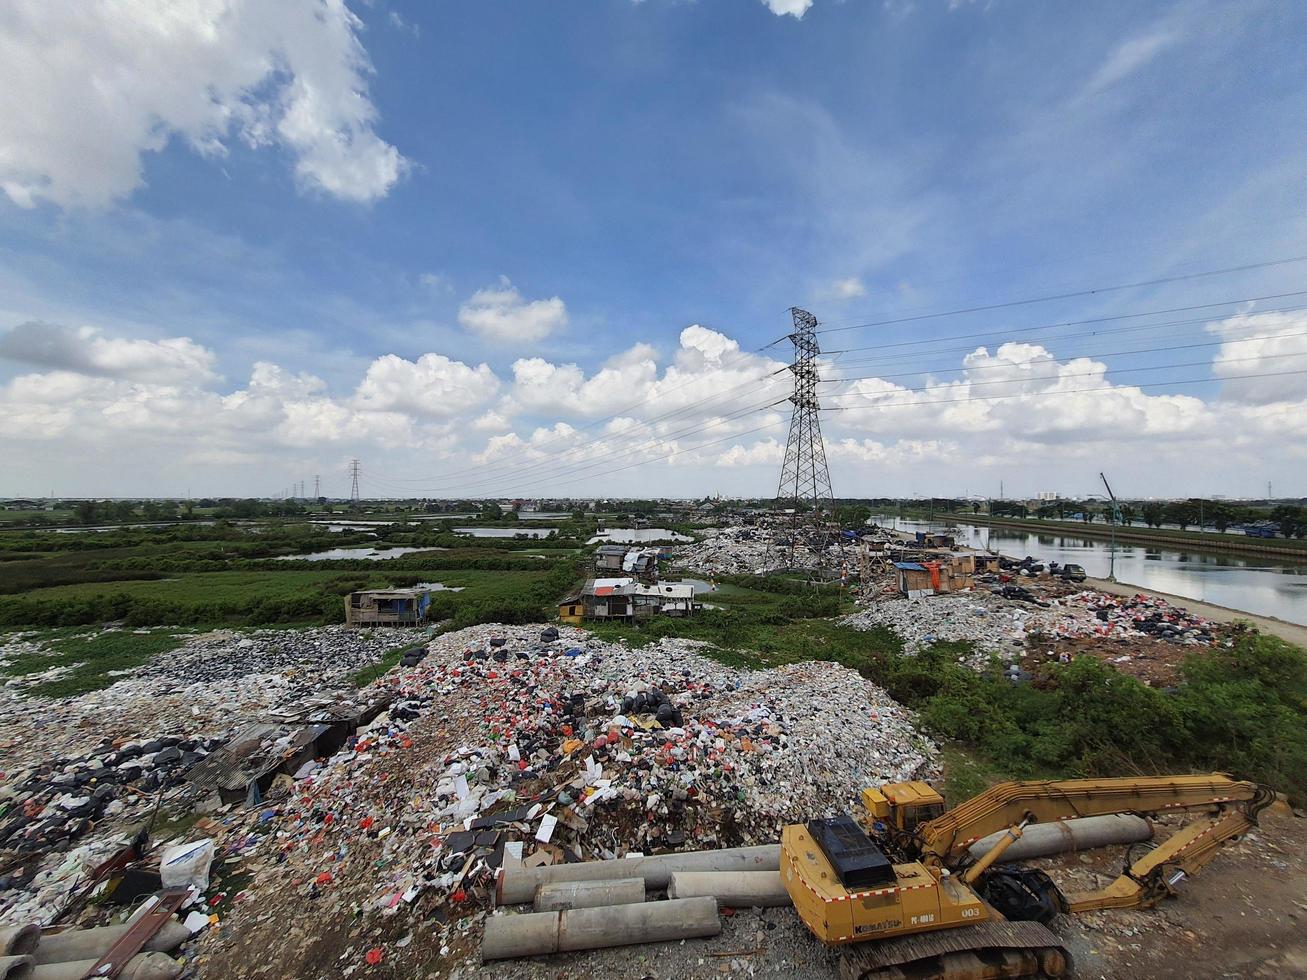 jakarta, indonesien i augusti 2022. ett olaglig sopor dumpa på de Bank av de öst översvämning kanal. den orsaker förorening i de omgivande miljö foto